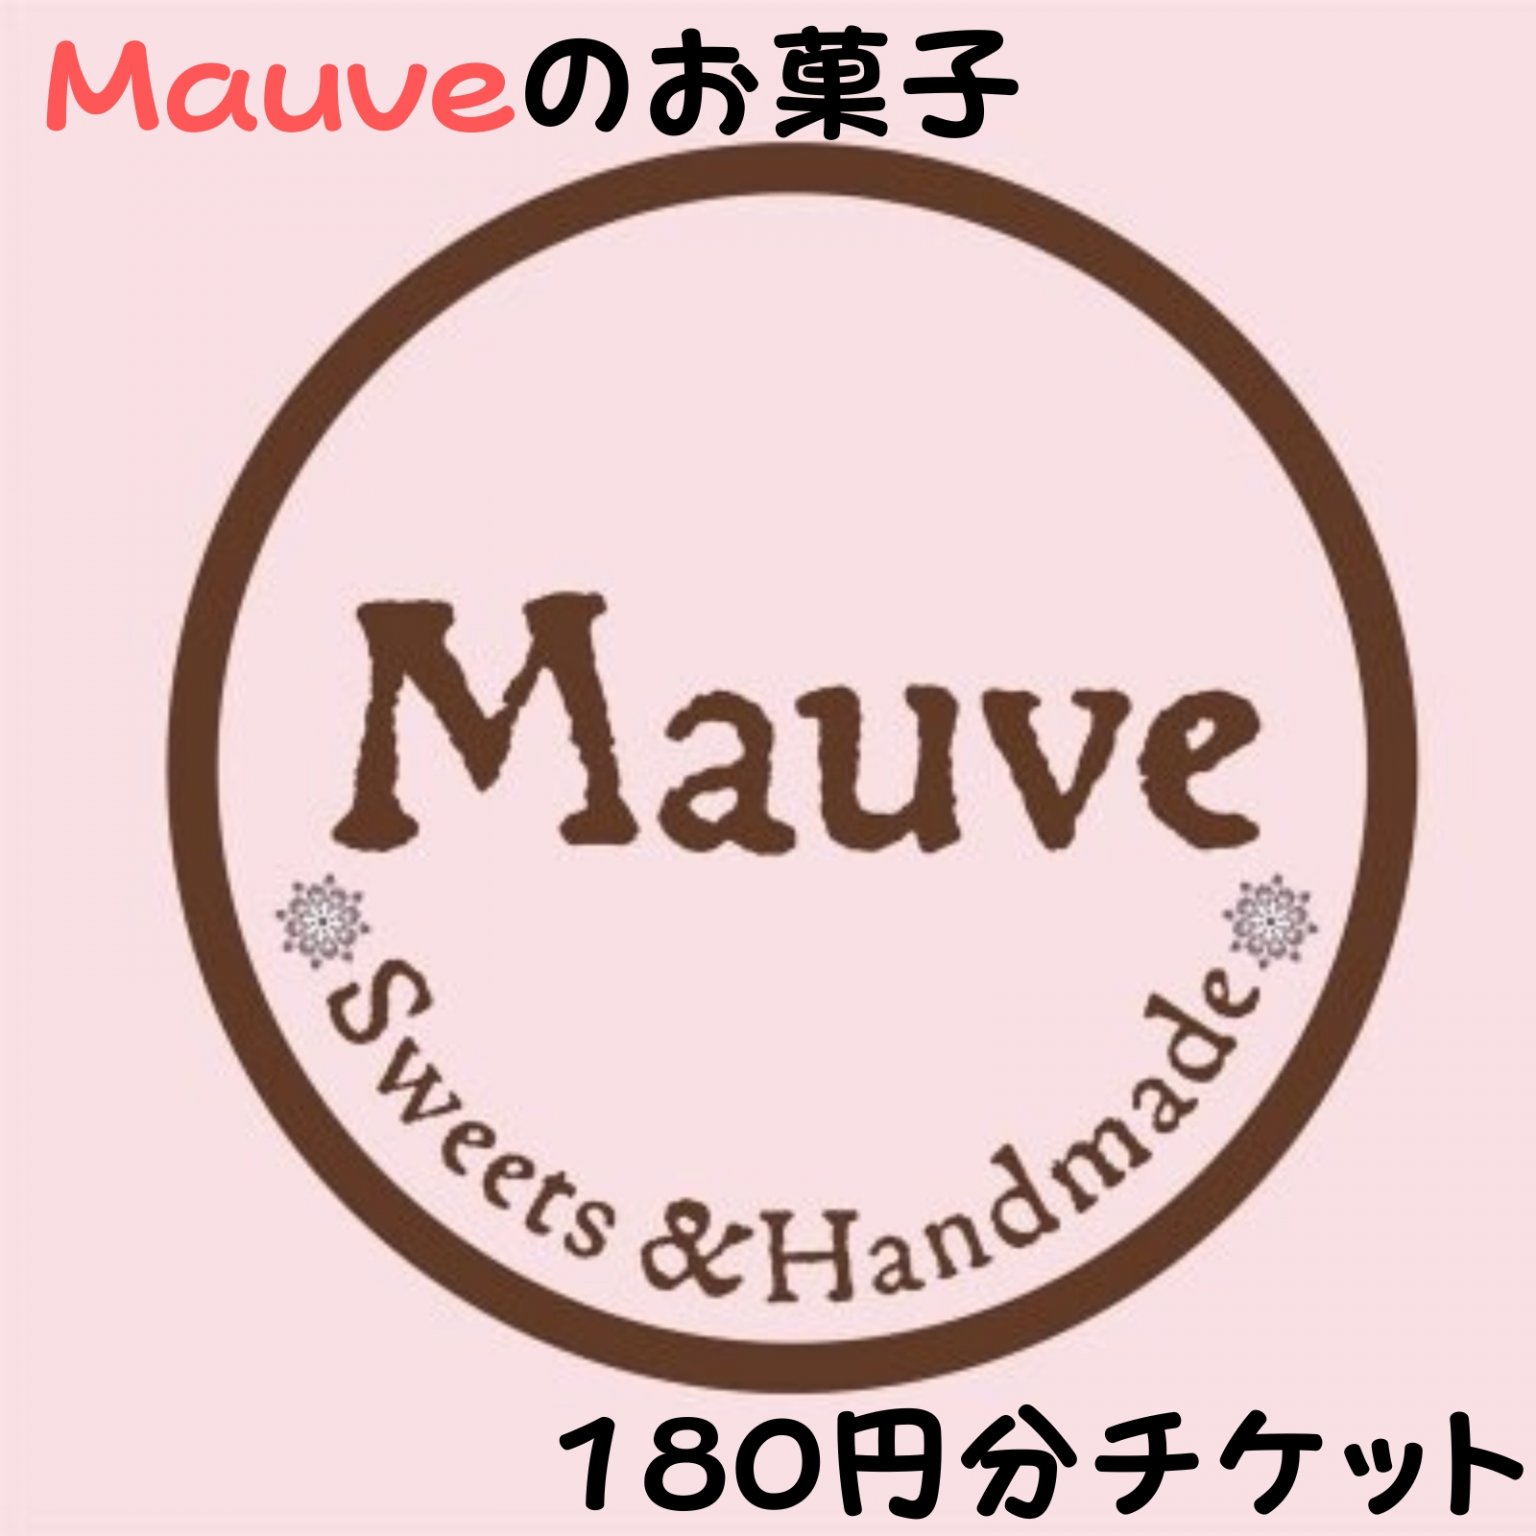 Mauveお菓子180円チケット